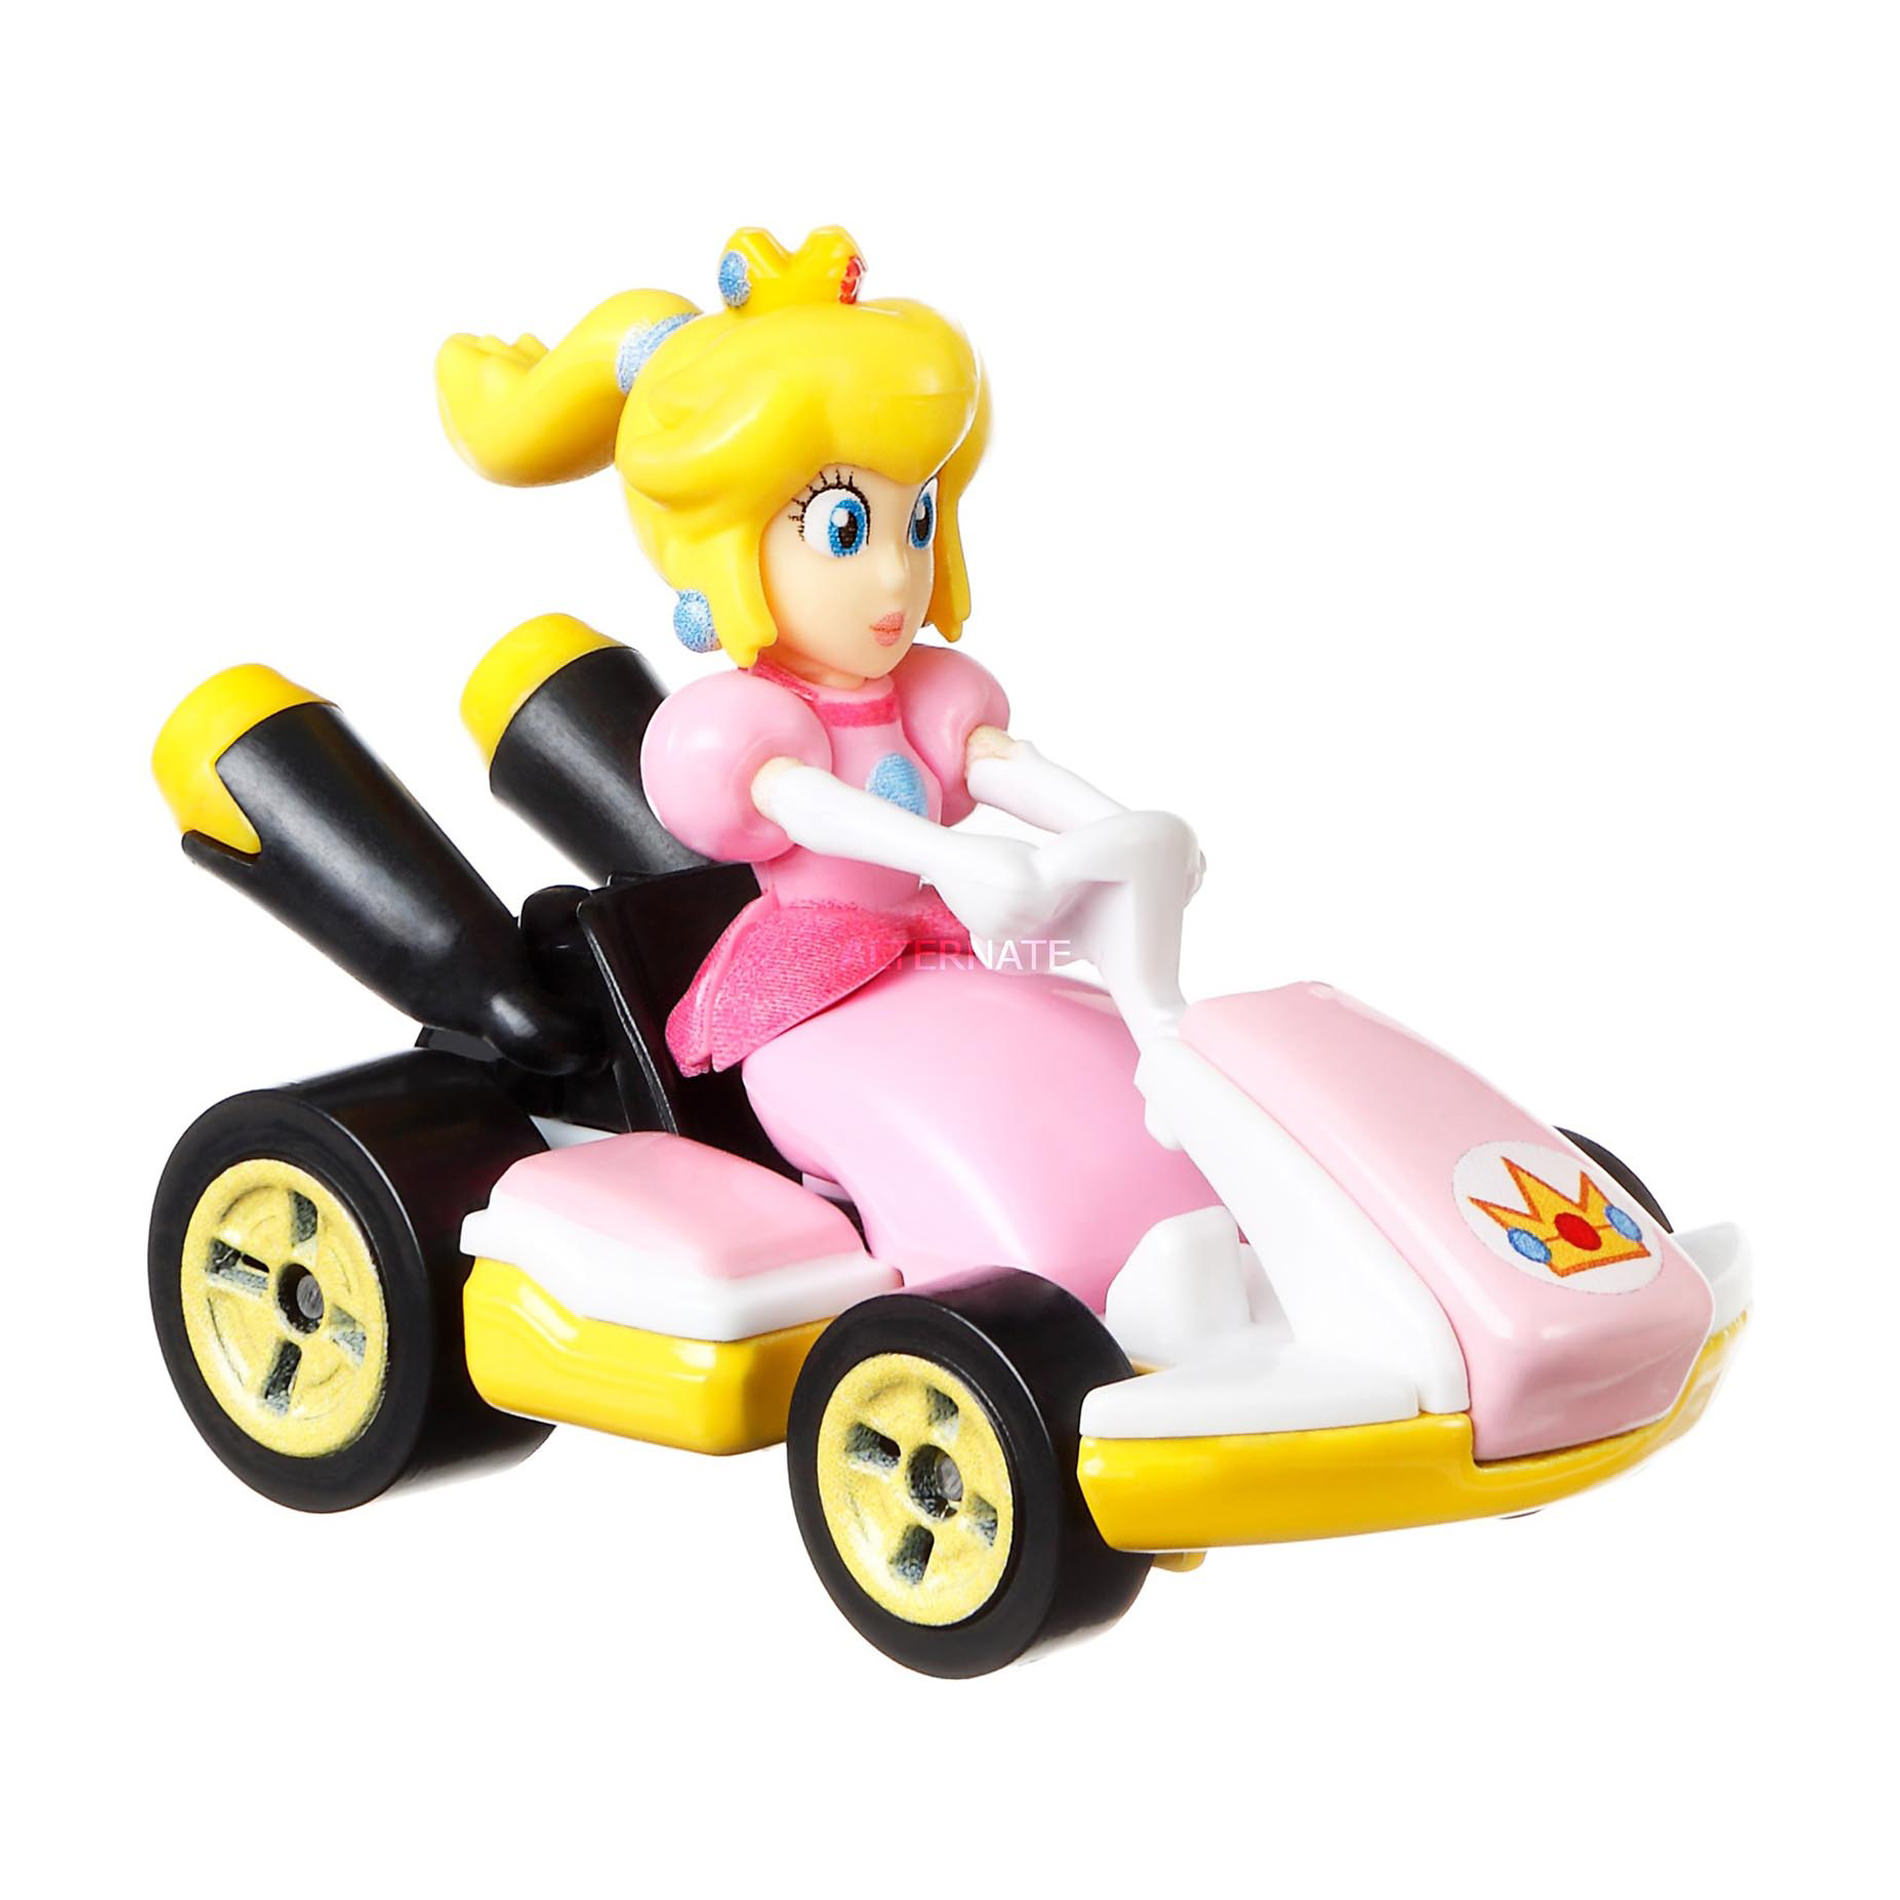 Buy Hot Wheels Super Mario Bros Princess Peach Gbg28 3798